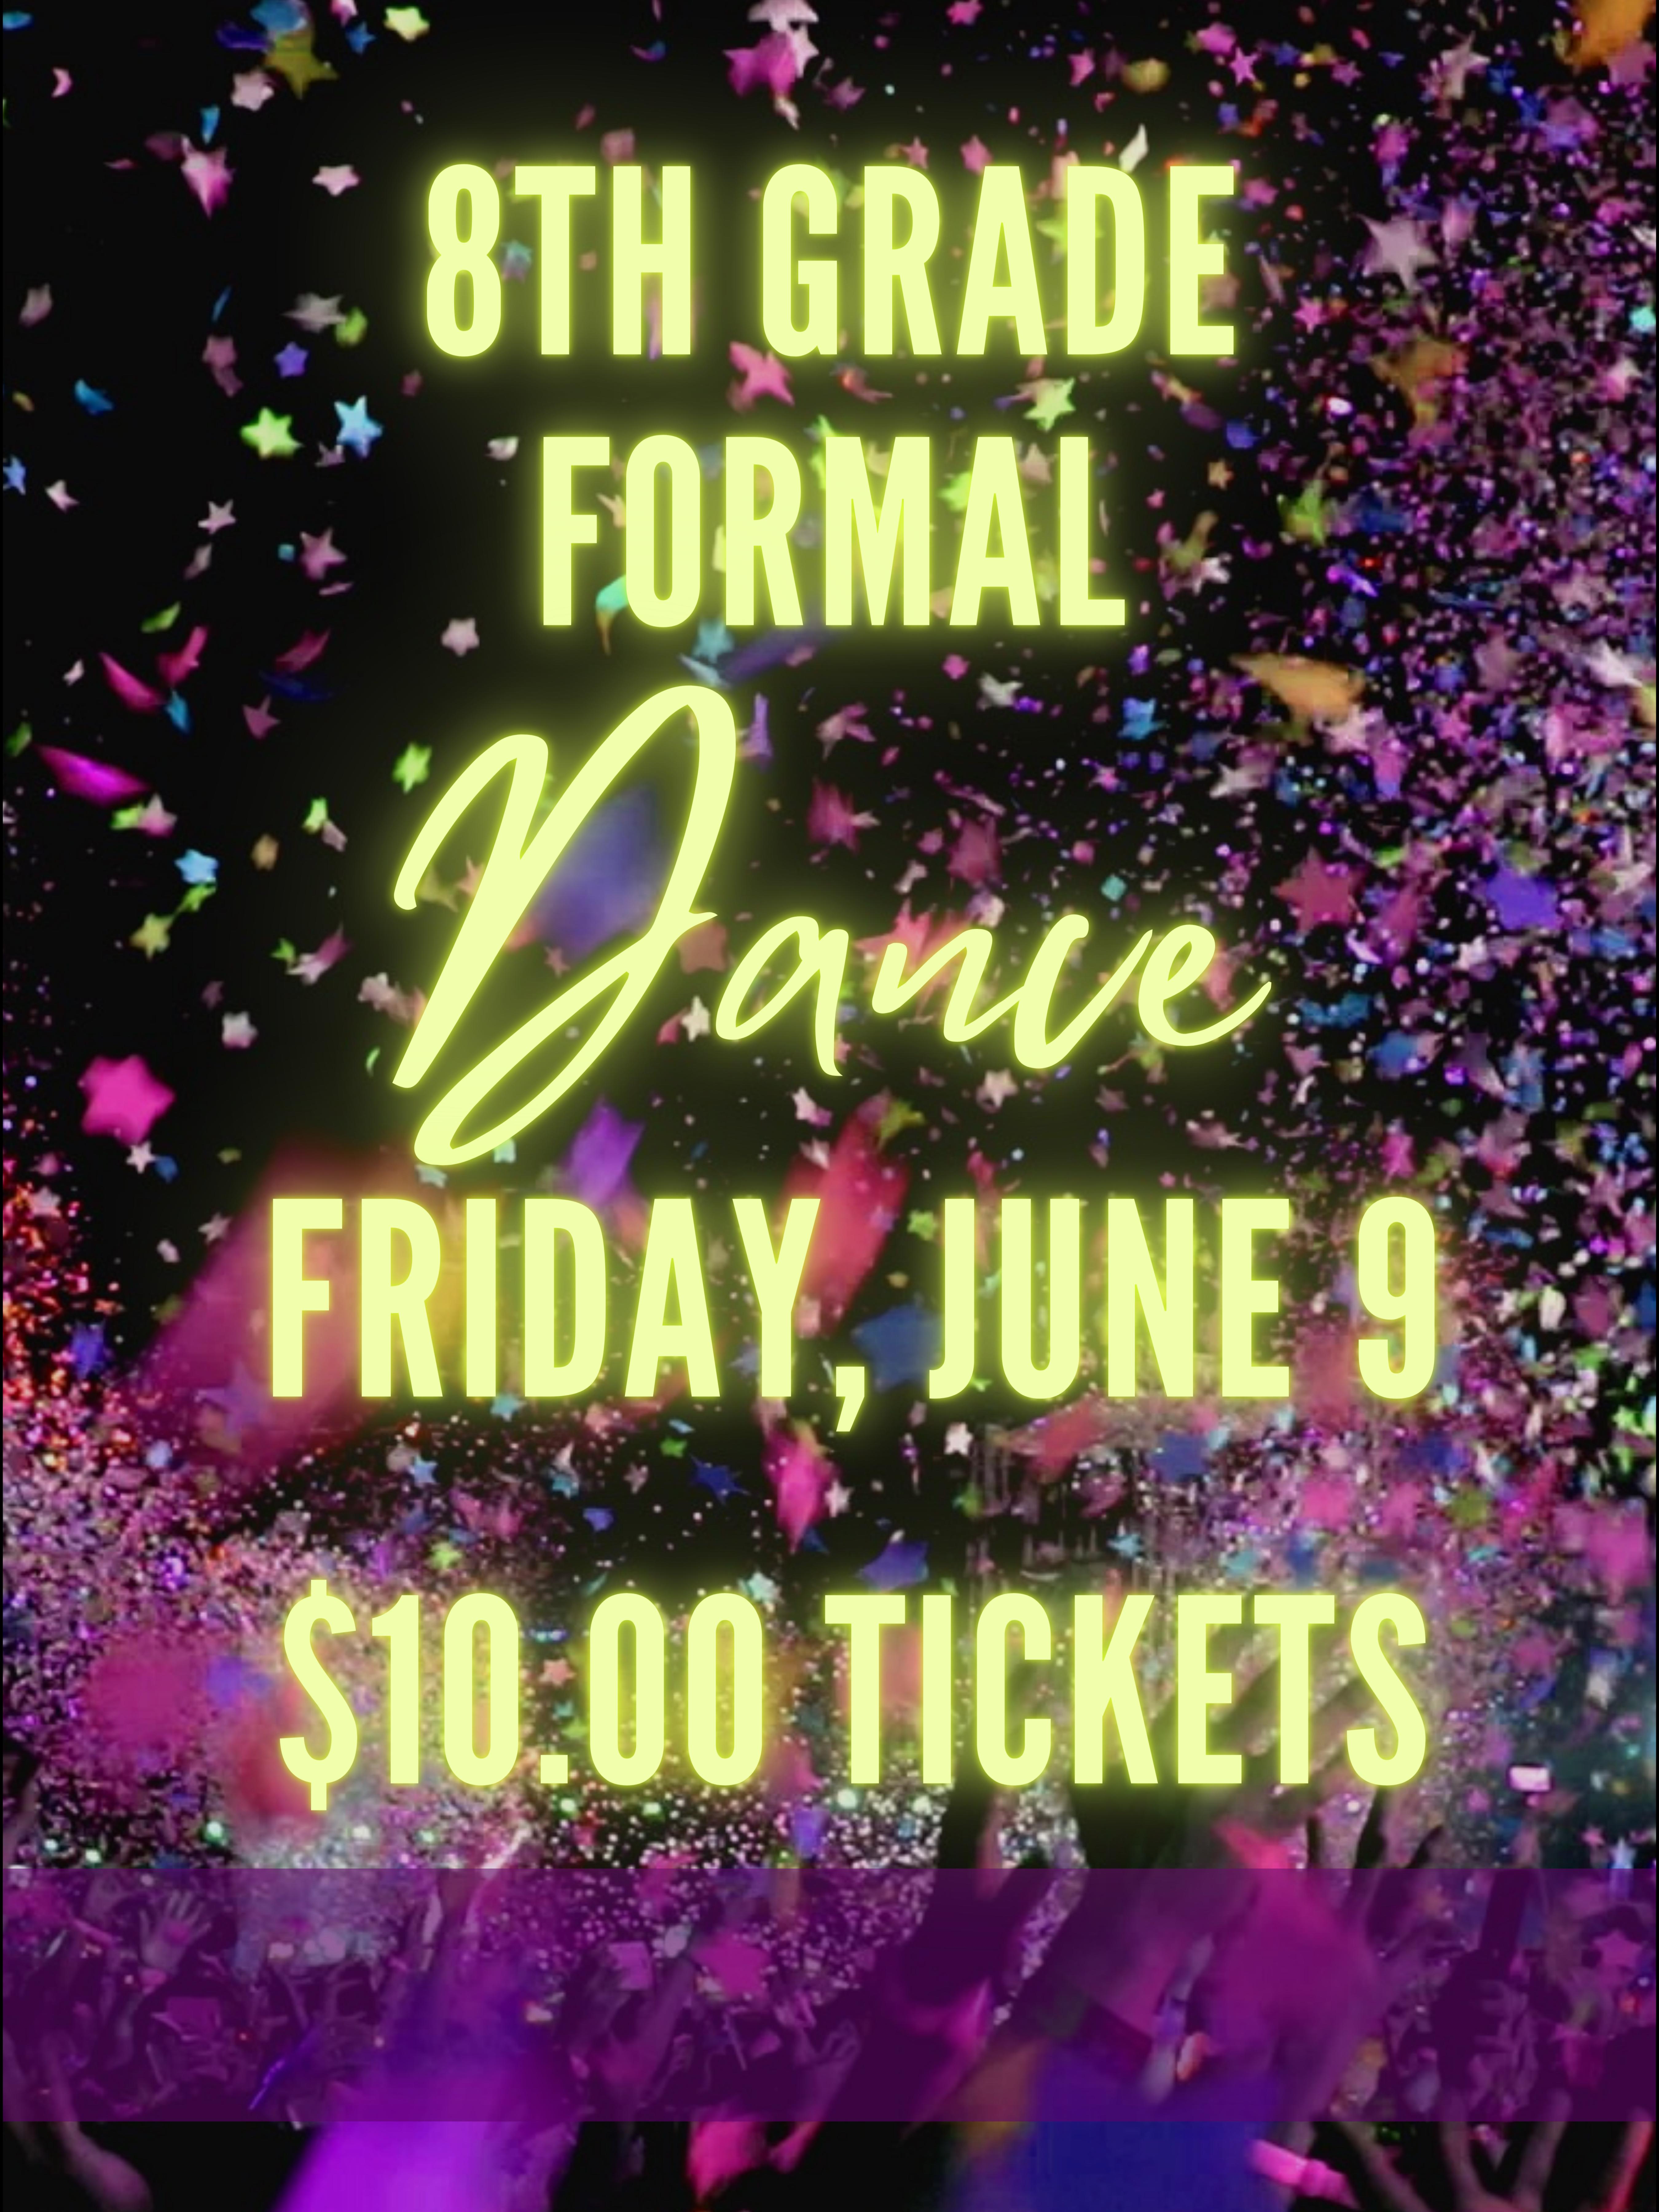 8th Grade Formal Dance June 9 at 5:30pm